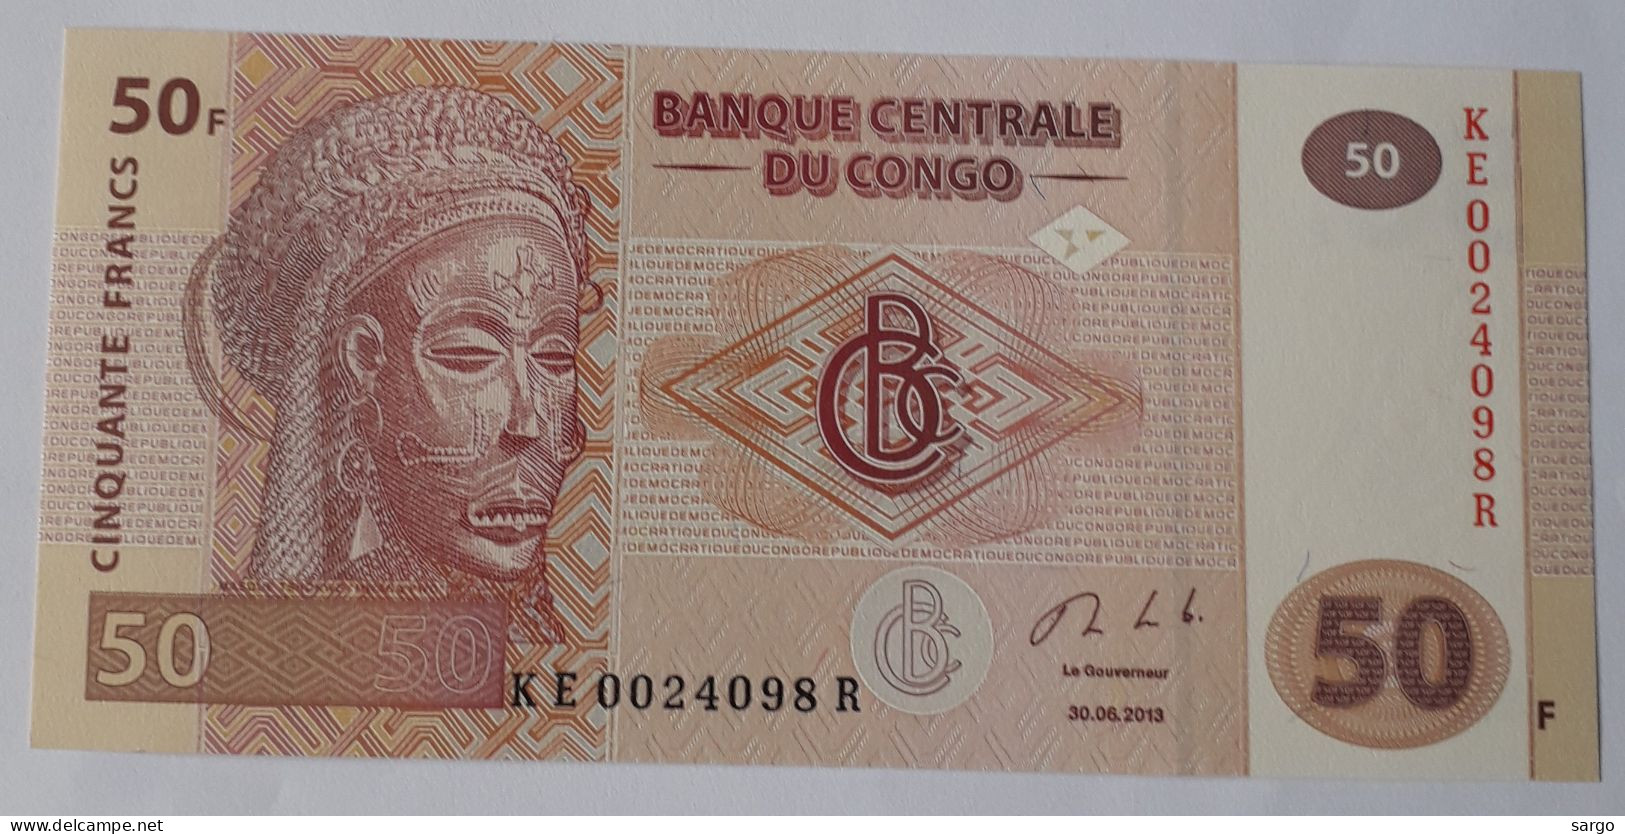 CONGO DEMOCRATIC REPUBLIC - 50 FRANCS  - P 97a  (2013) - UNC - BANKNOTES - PAPER MONEY - CARTAMONETA - - République Démocratique Du Congo & Zaïre